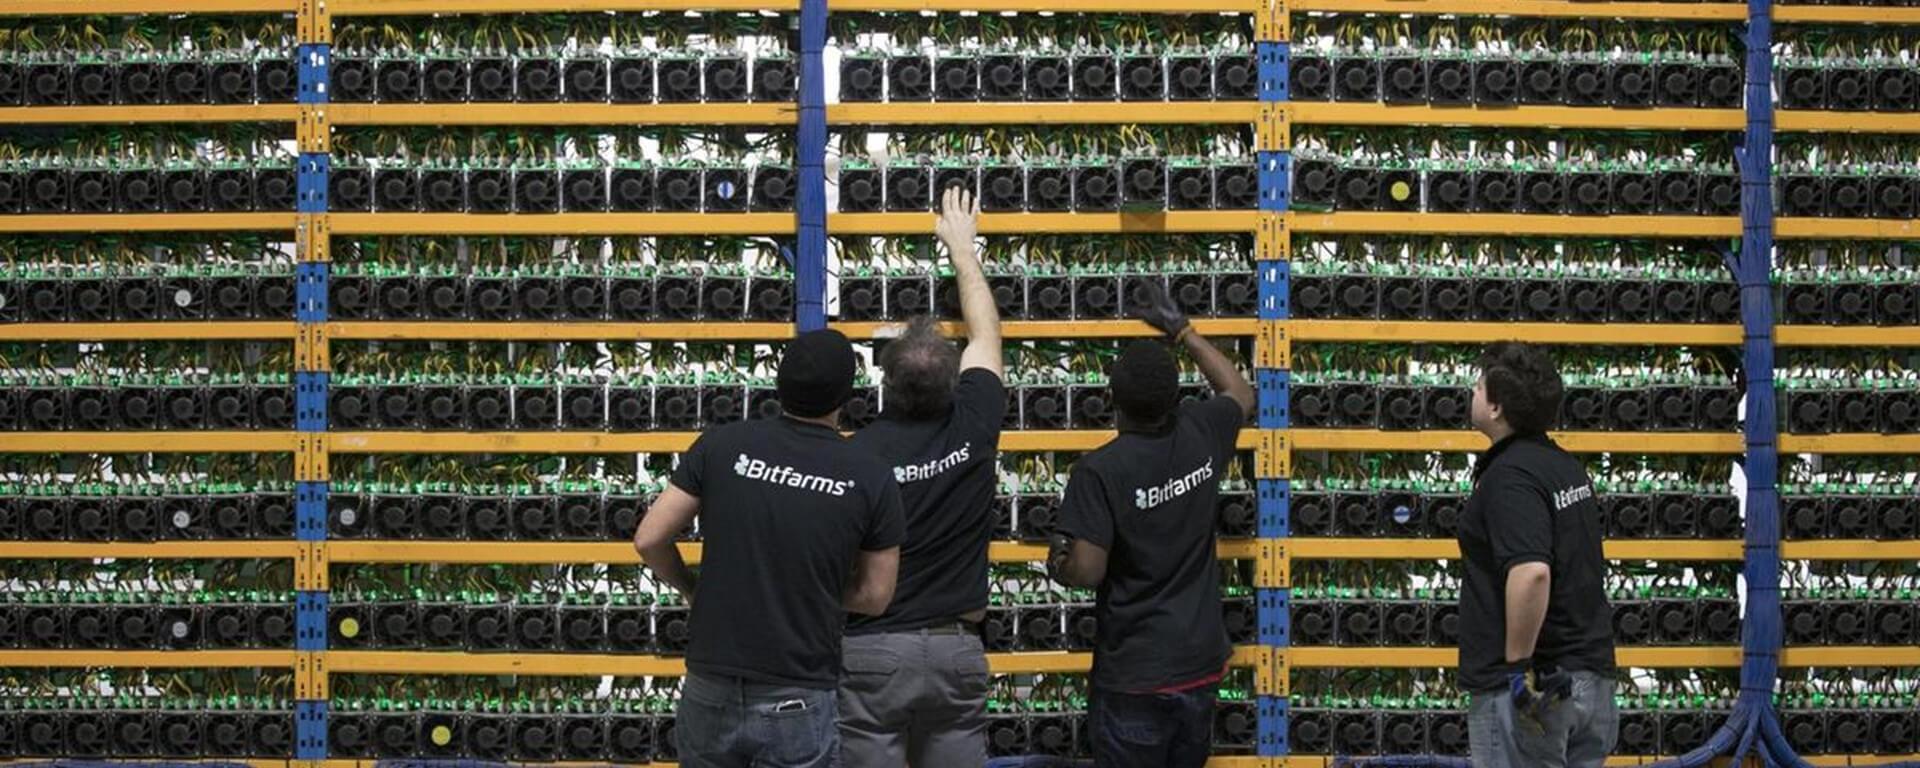 mineradores de Bitcoin estariam desfazendo-se de suas máquinas